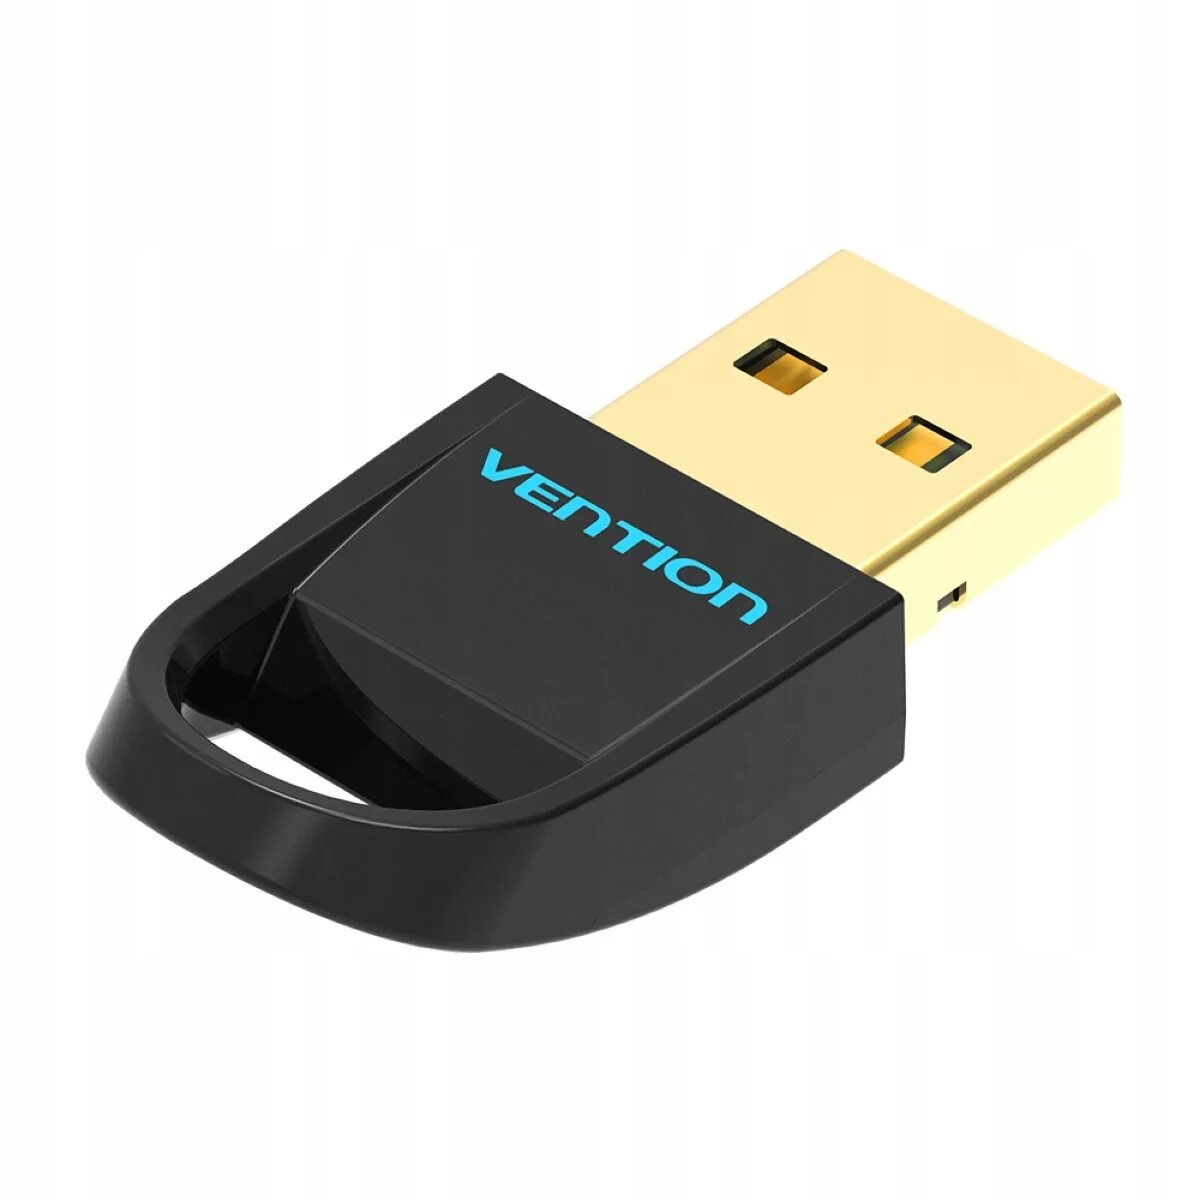 Bluetooth адаптер Vention cddb0. Адаптер Vention USB Bluetooth 5.0 Adapter Black. BT адаптер USB Dongle 5.0,4.0. Адаптер USB Bluetooth w12-4.0. Bluetooth адаптеры bt